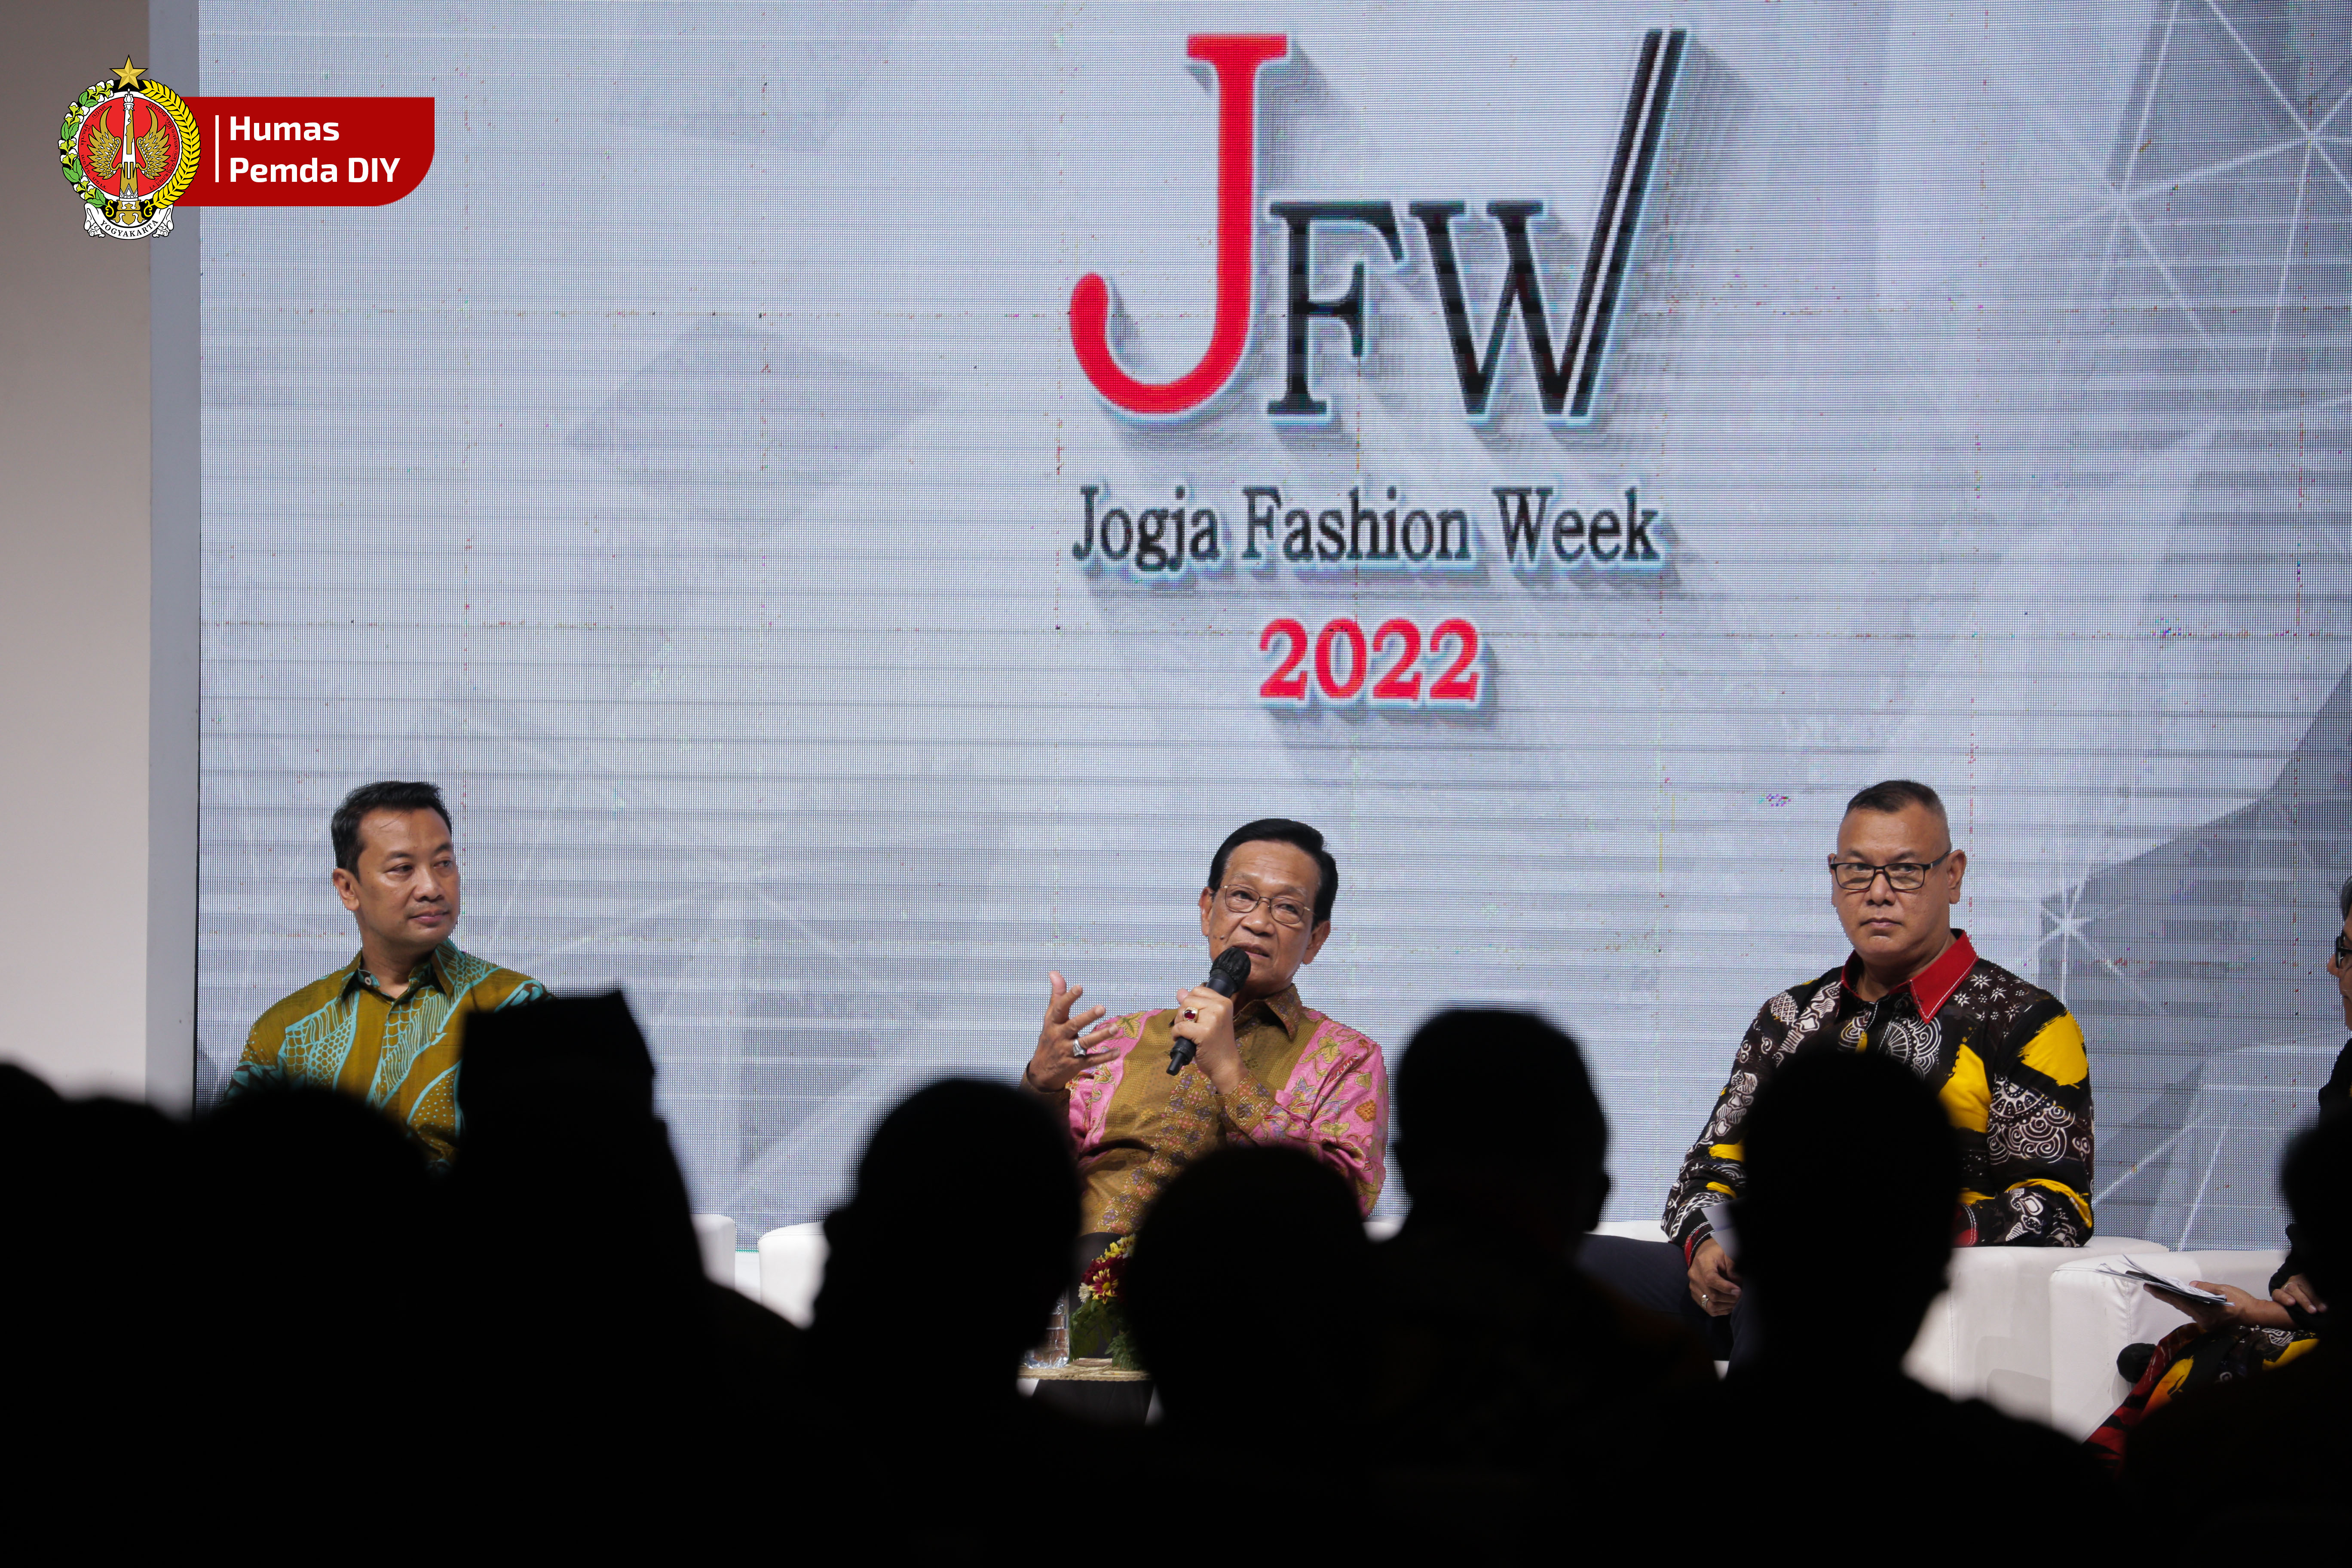 Jogja Fashion Week 2022